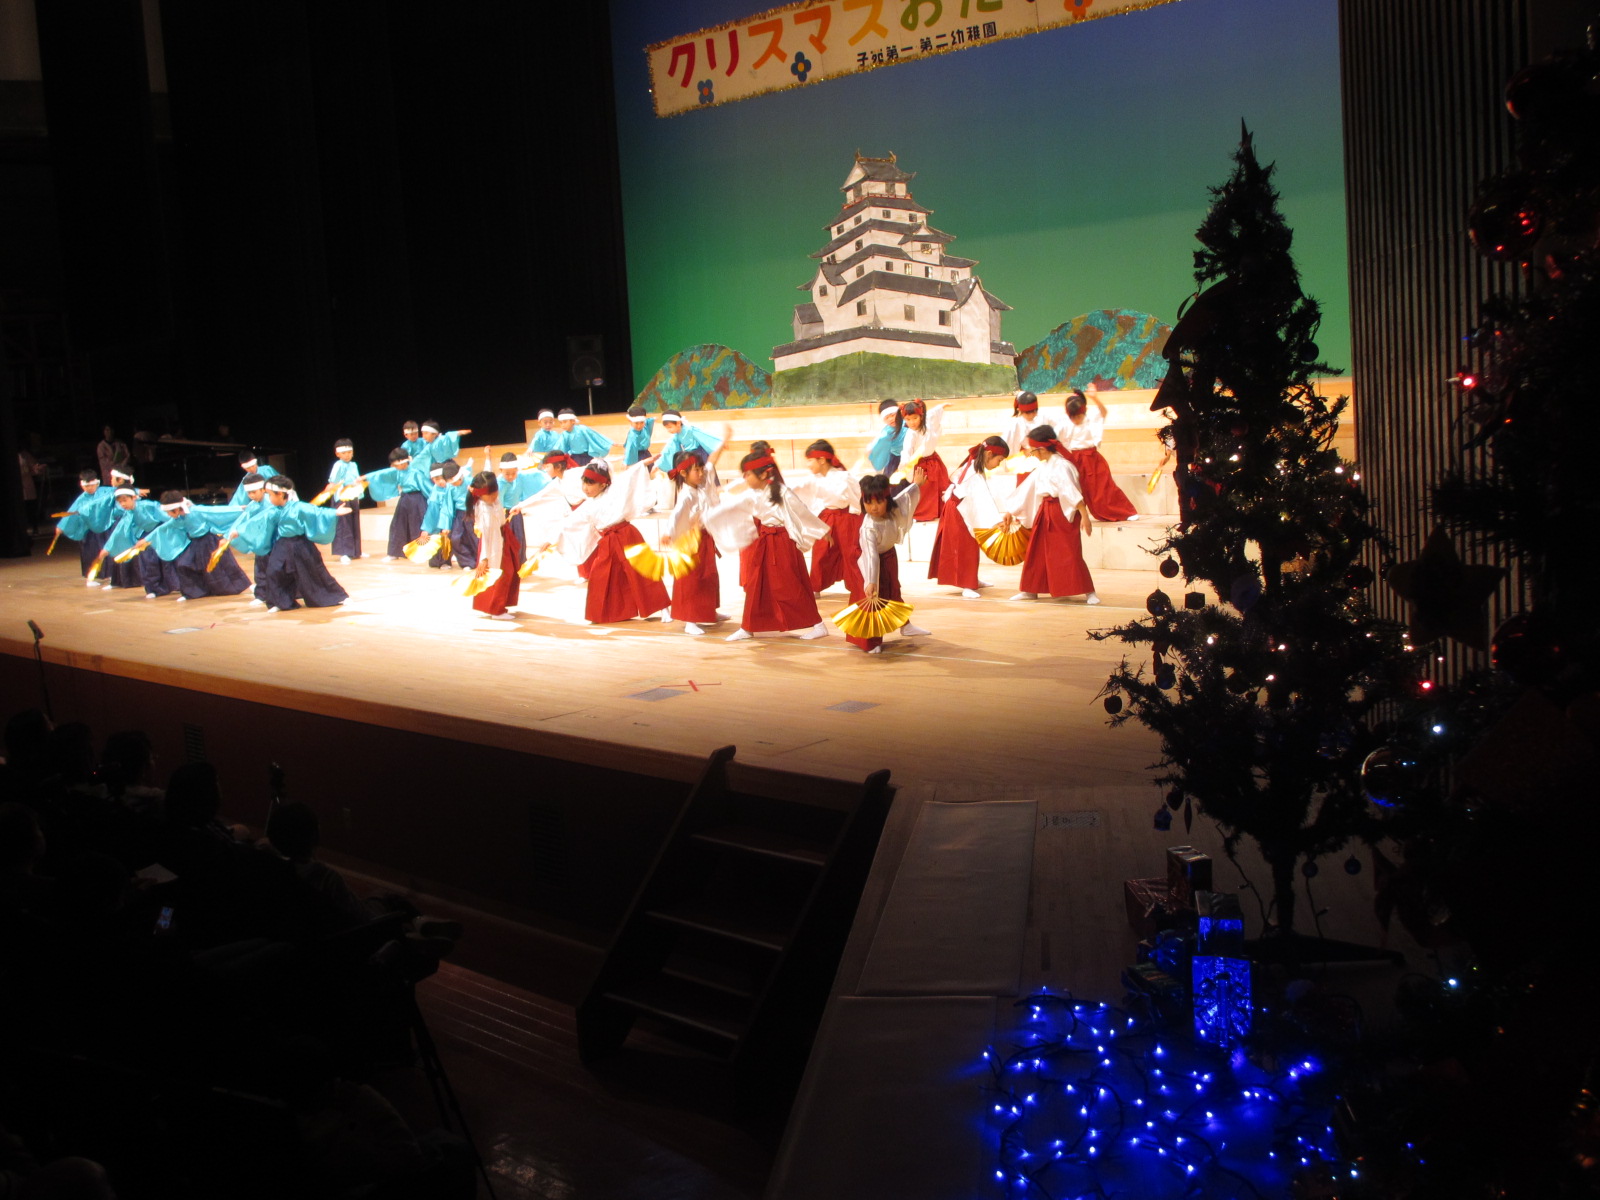 ゆり組の日本舞踊は「古城」。羽織袴の和装に扇、鉢巻きのいで立ちで見事にそろった演舞に皆の目は釘付け。